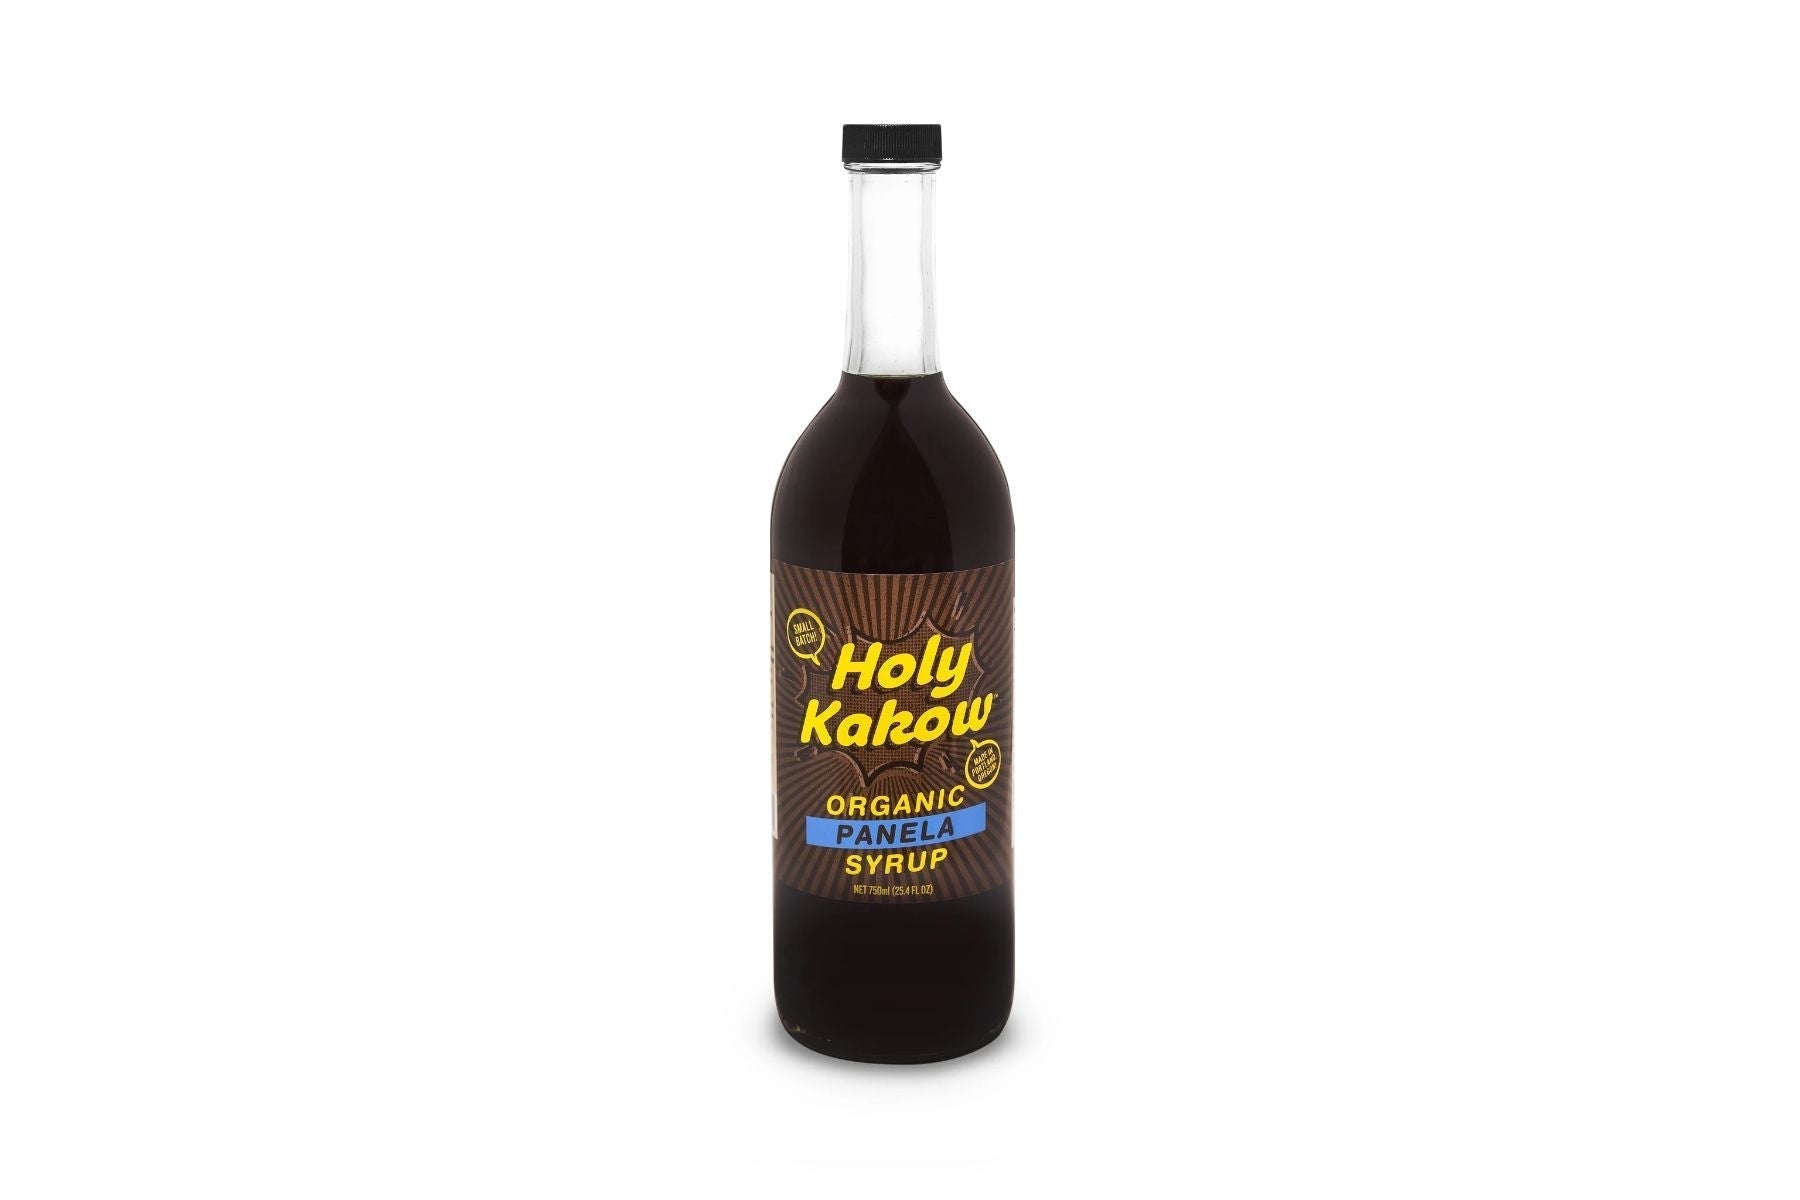 Holy Kakow - 750ml Syrup Bottle: Organic Panela